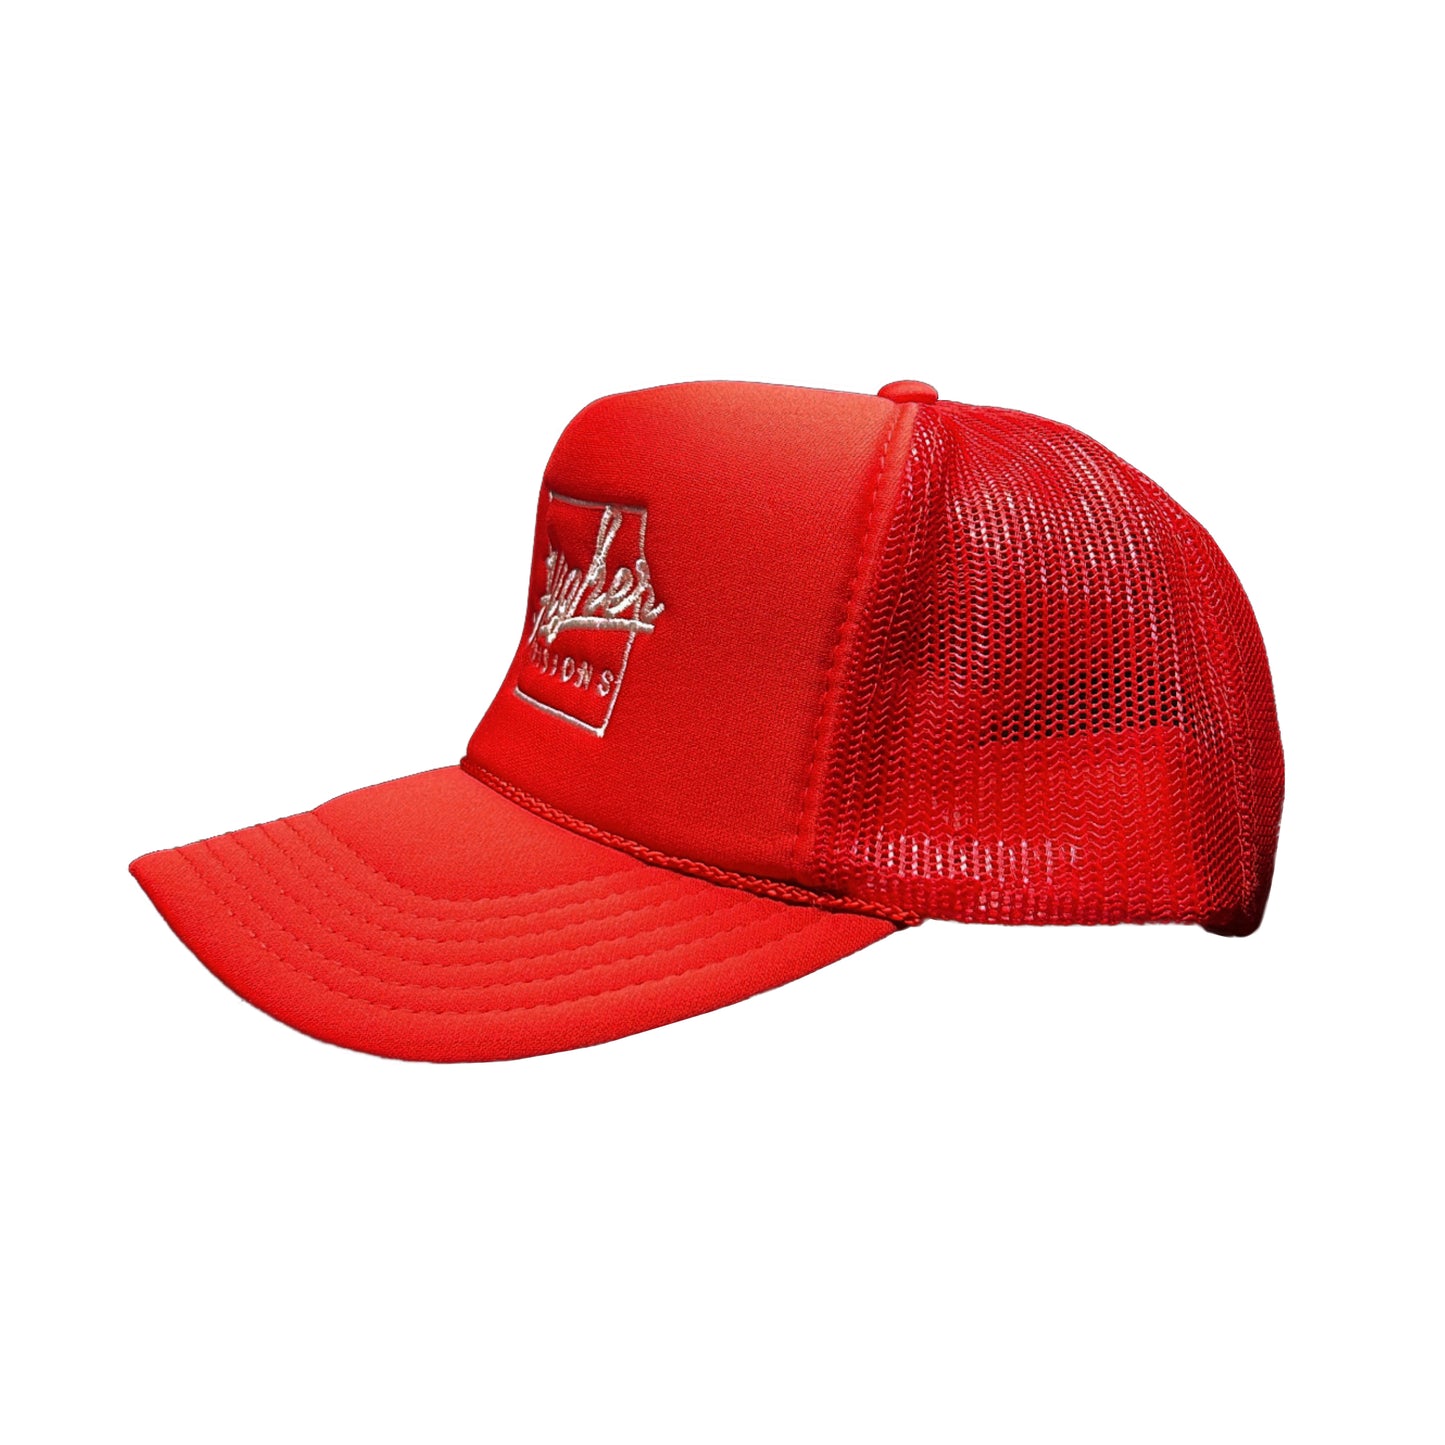 Red Trucker hat